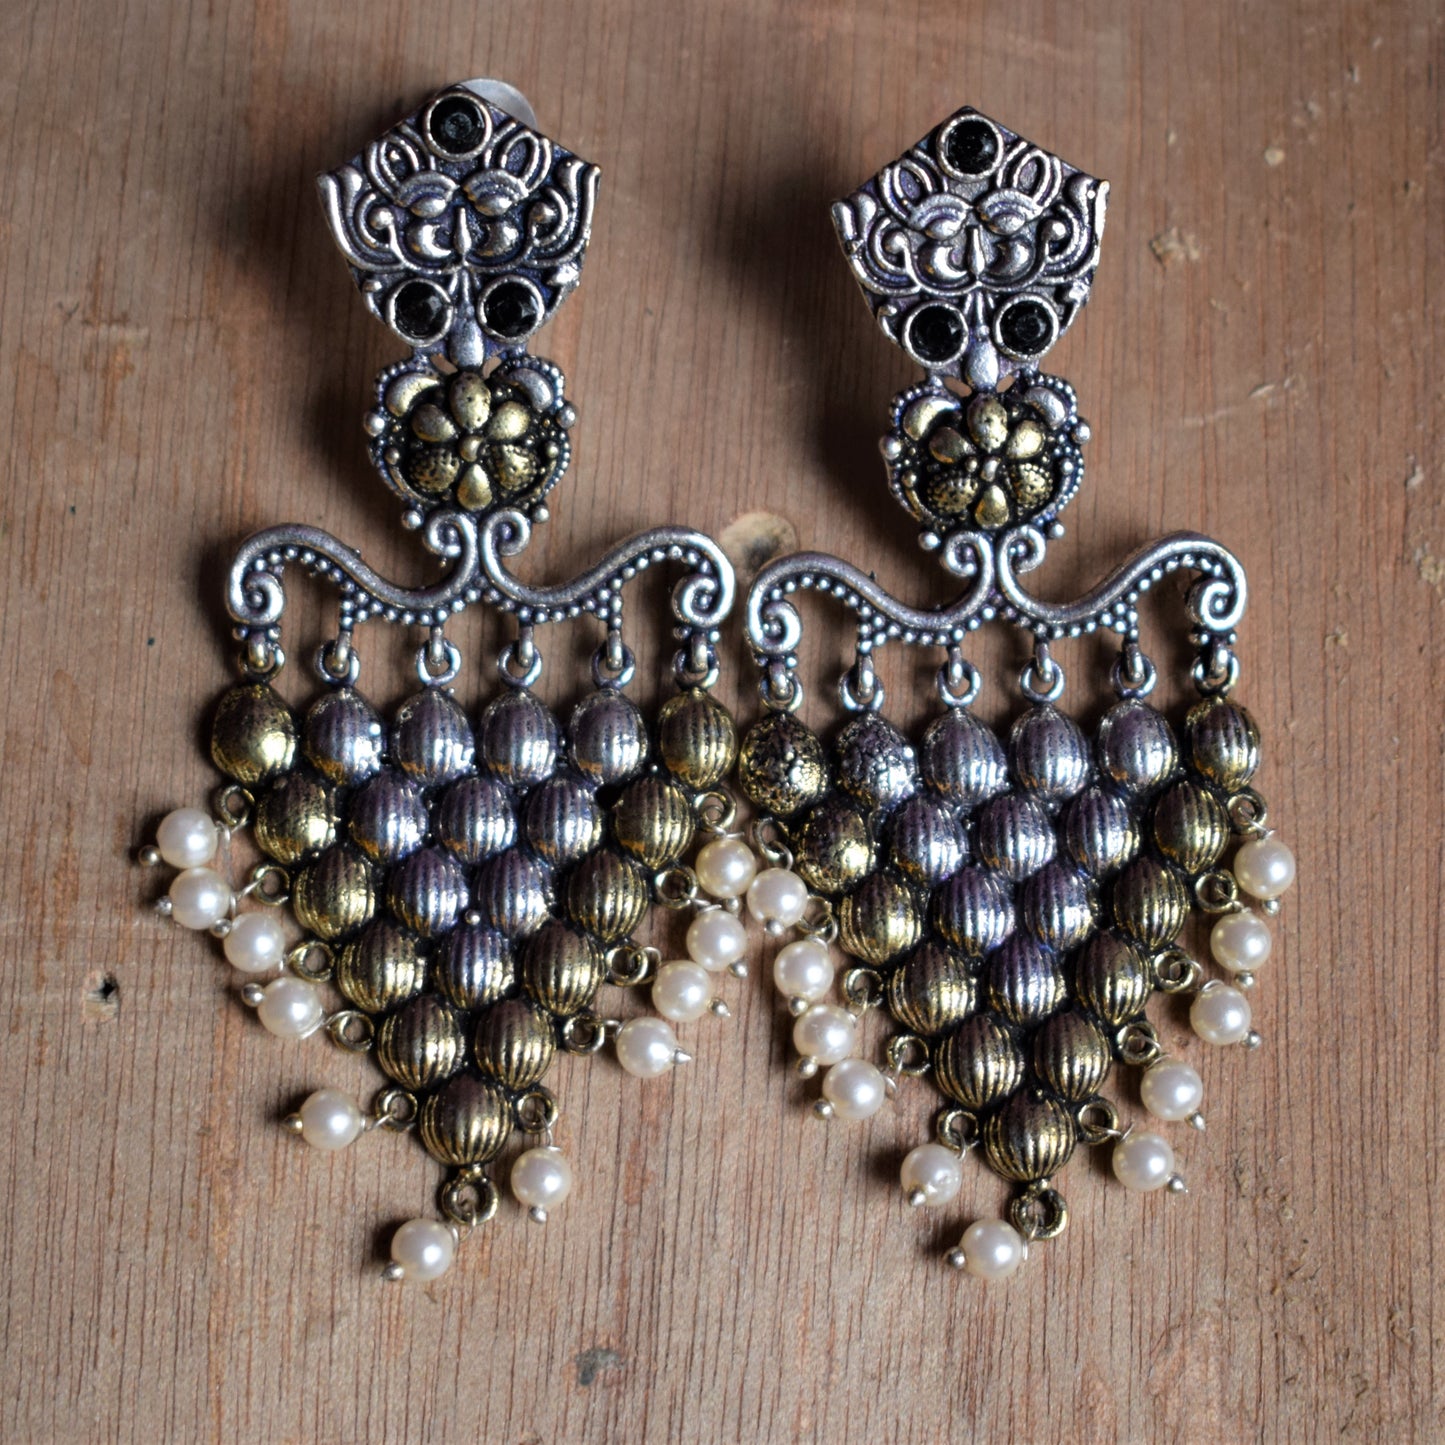 Traditional German Silver Antique Motif Earrings - GlitterGleam